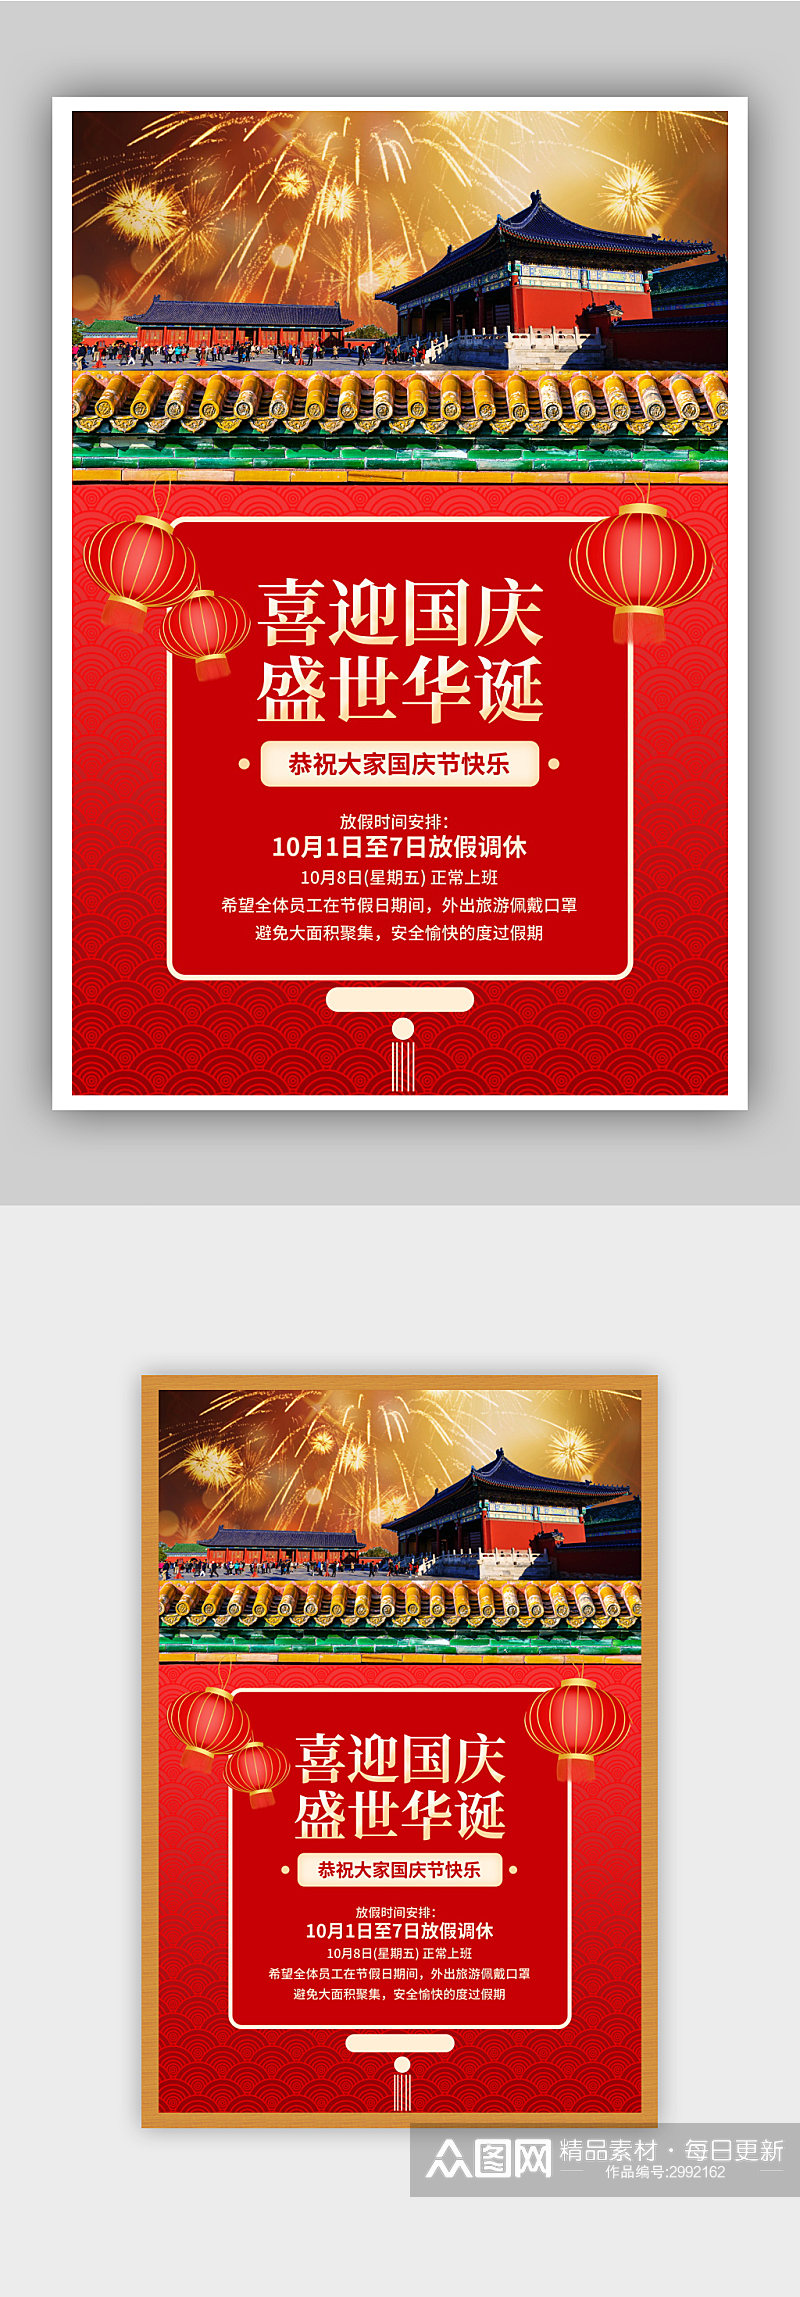 红色大气国庆节放假通知海报素材